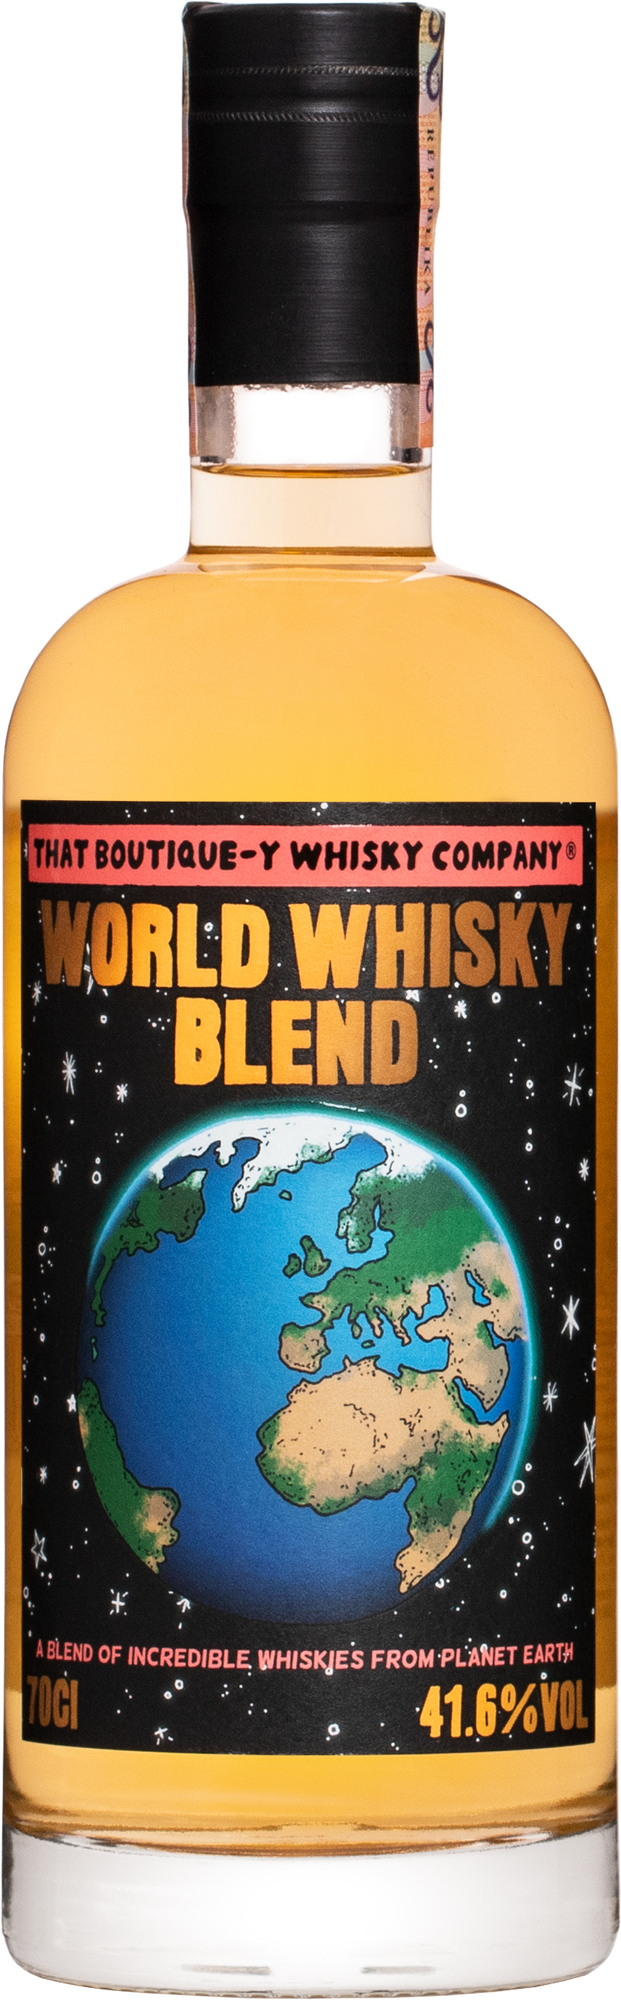 That Boutique-y Whisky Company World Whisky Blend 41,6% 0,7l (čistá fľaša)